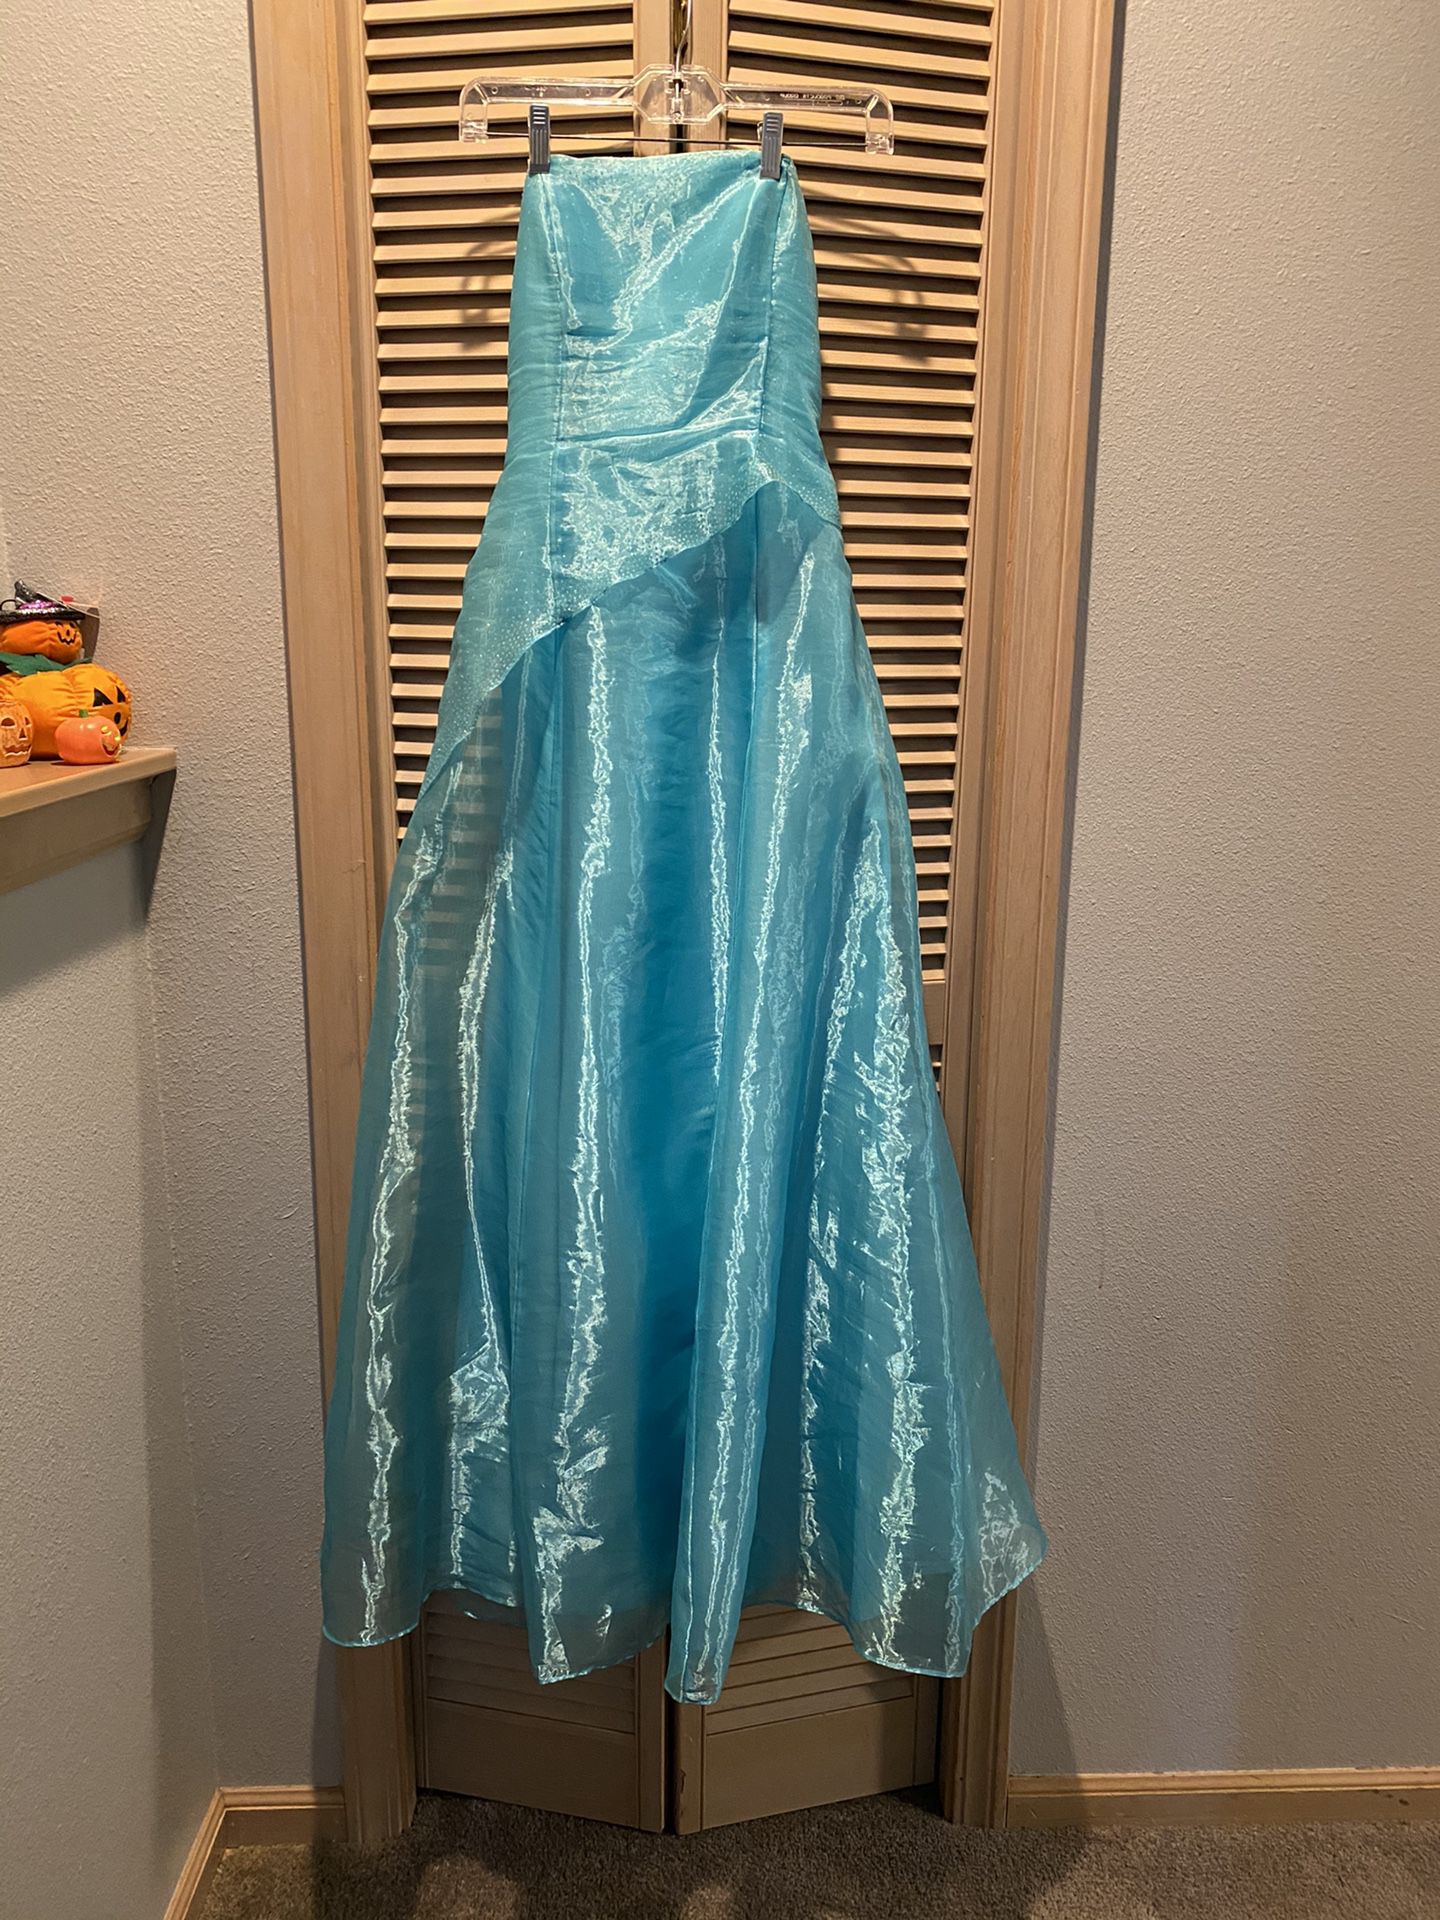 Teal Formal Dress